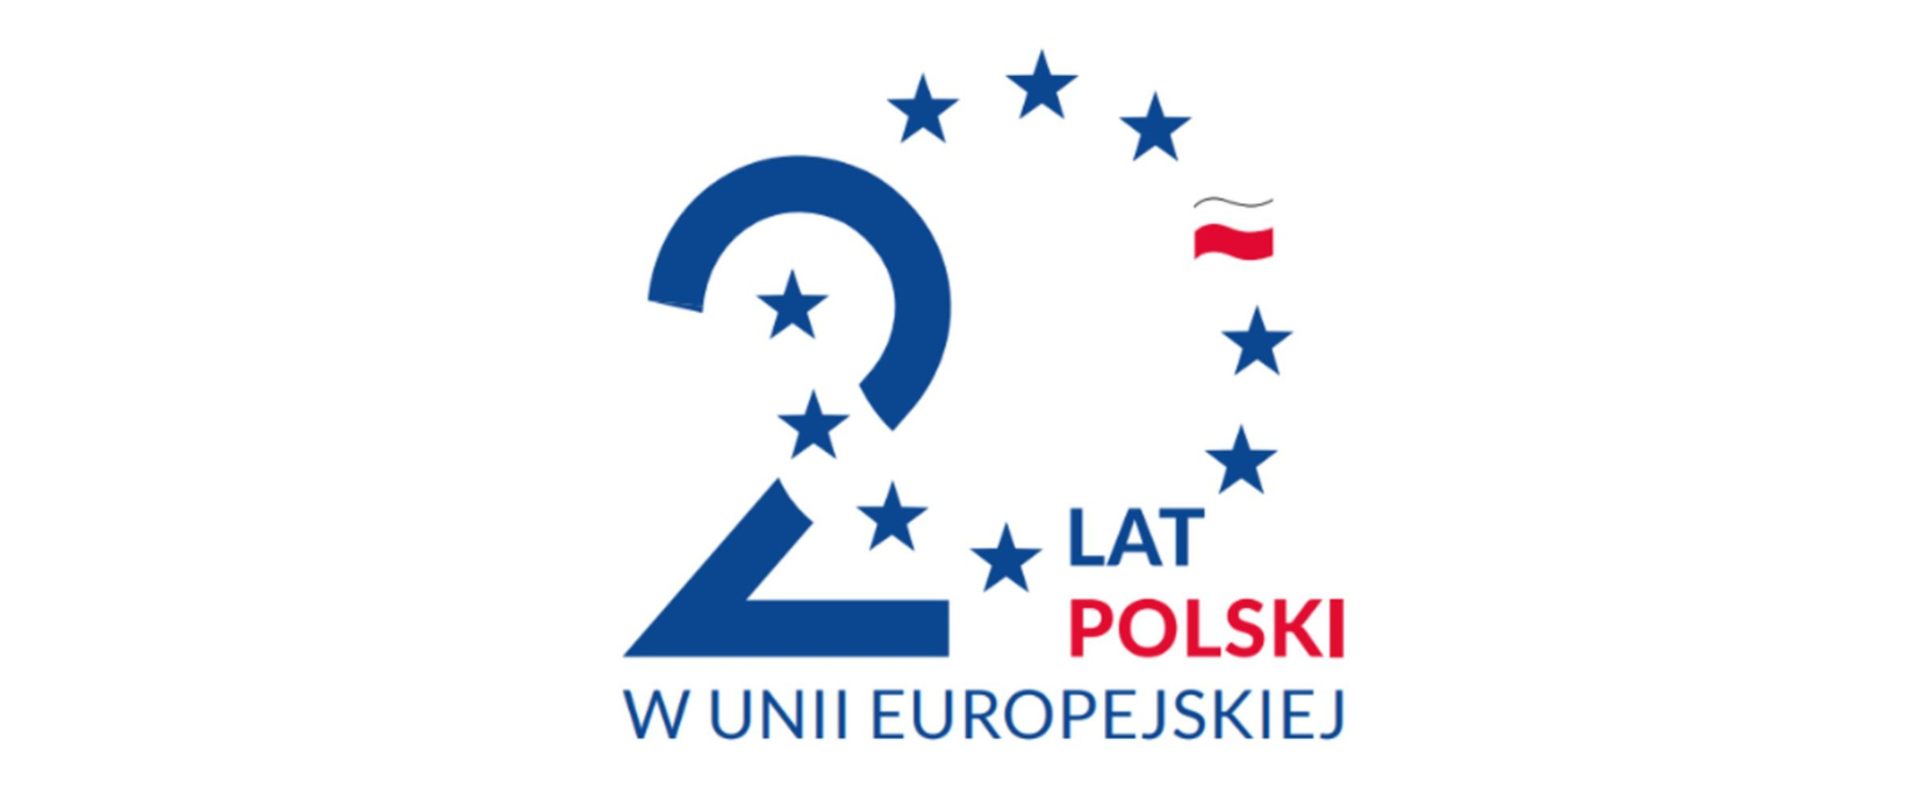 Napis - 20 lat Polski w Unii Europejskiej. Cyfrę "zero" tworzy grafika z gwiazdkami nawiązującymi do flagi UE z flagą Polski zastępującą jedną gwiazdkę.